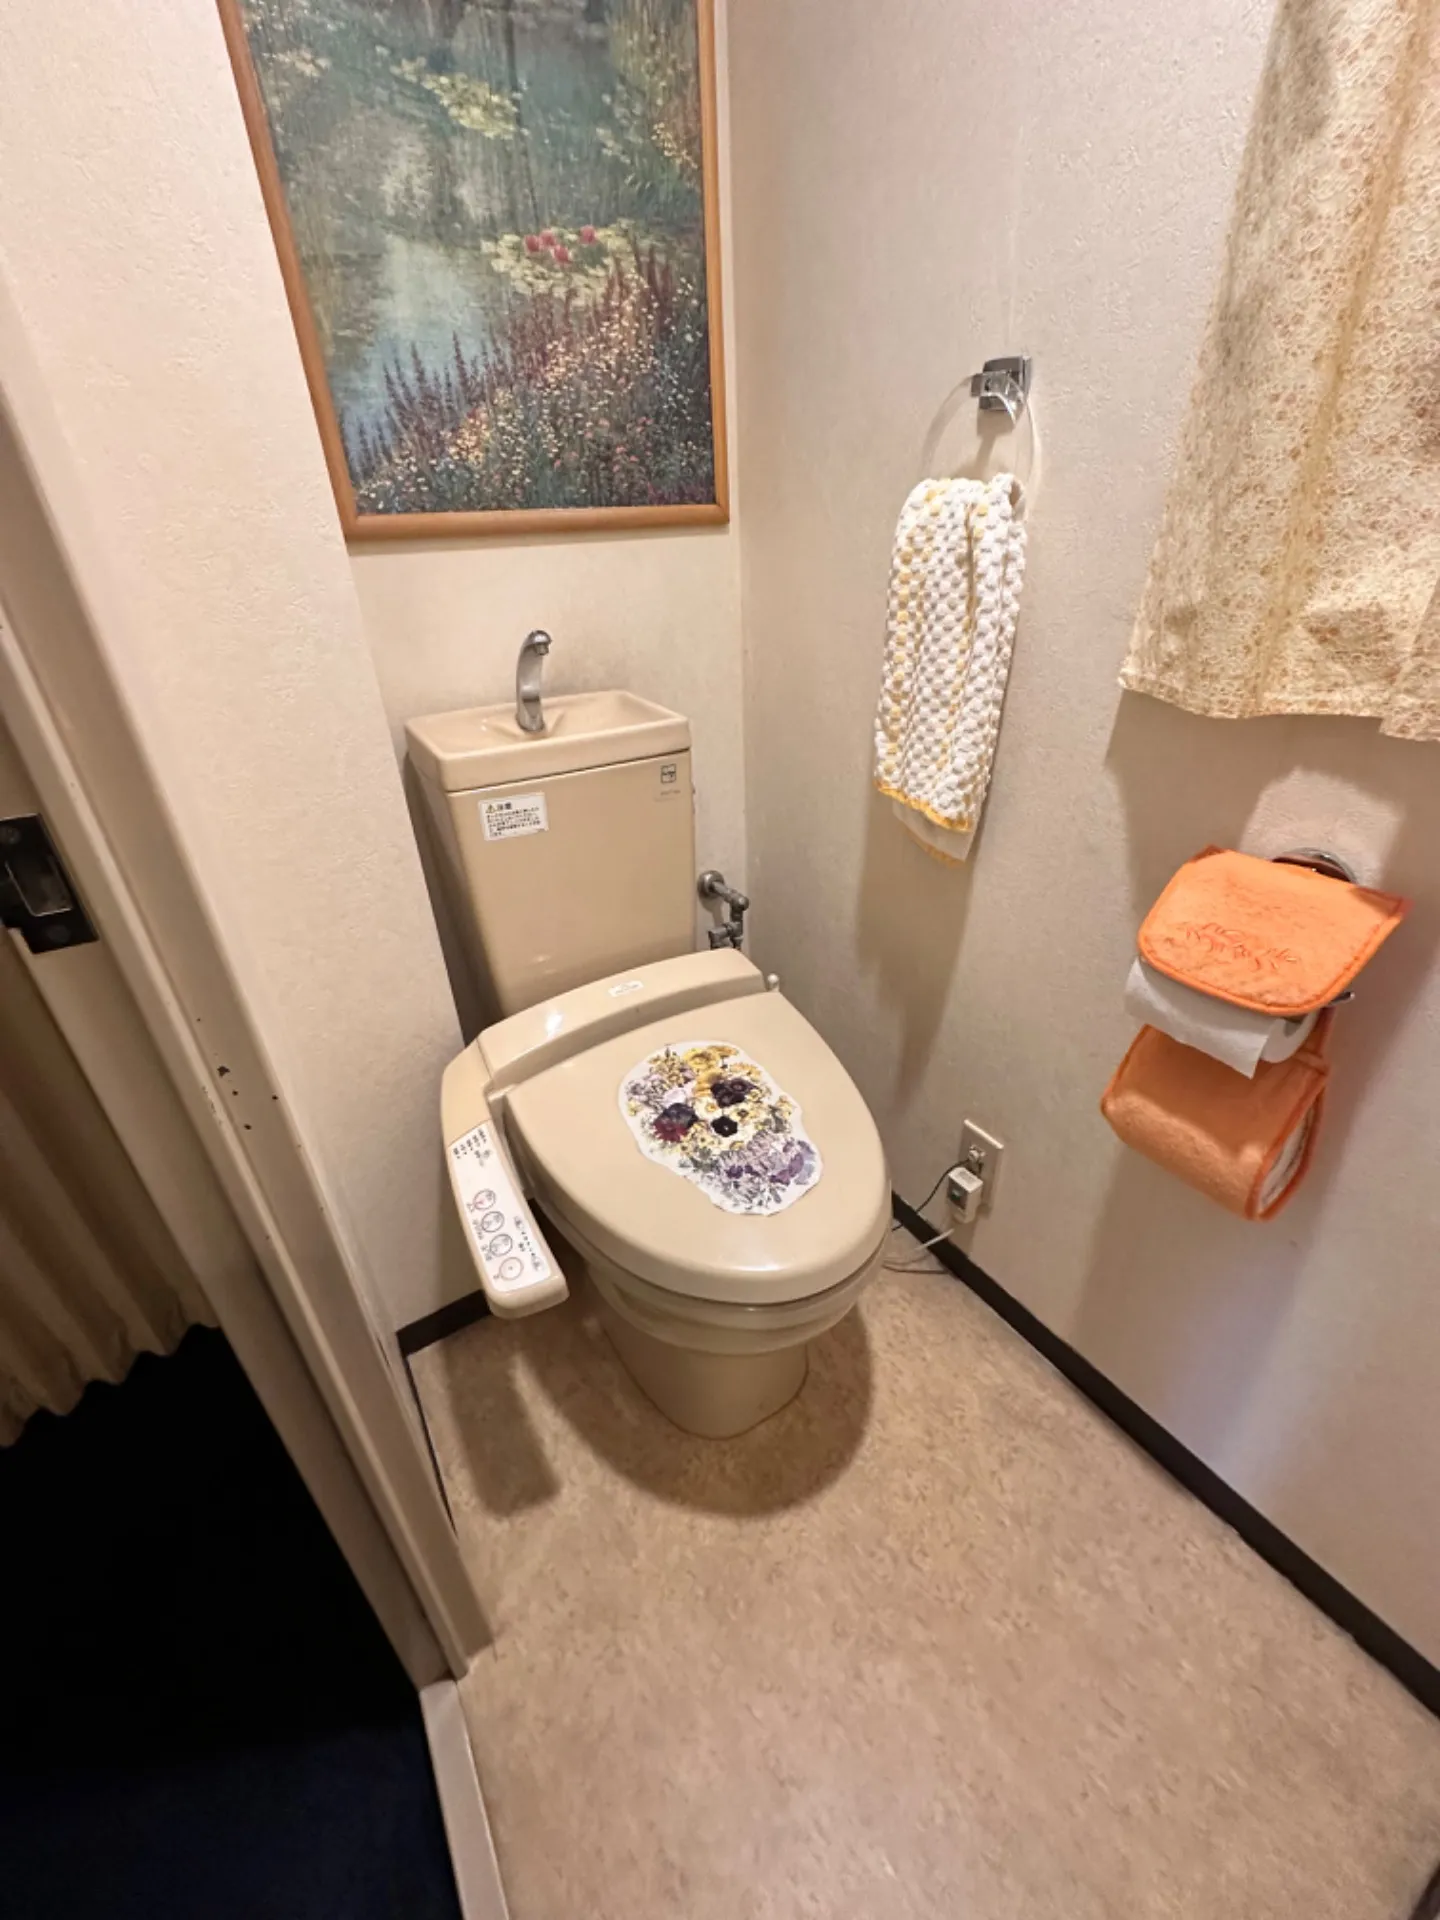 座間市小松原のマンションでおトイレの交換をさせていただきました。